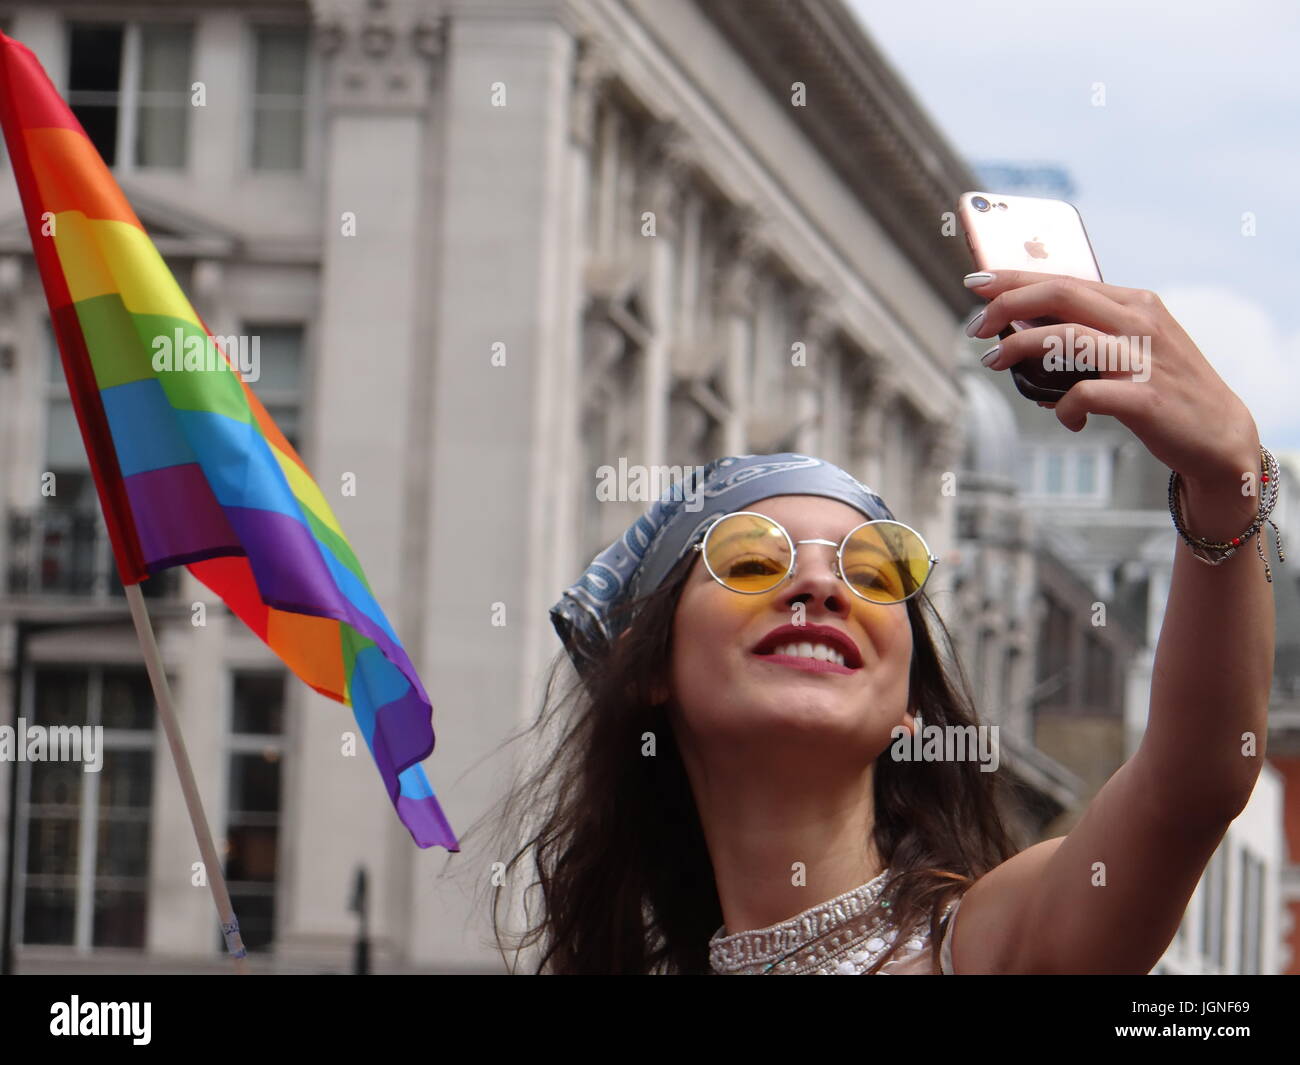 Londra, Regno Unito. 8 Luglio, 2017. London Pride Parade paludi attraverso Regent street a Trafalgar square, London, Regno Unito Foto Stock